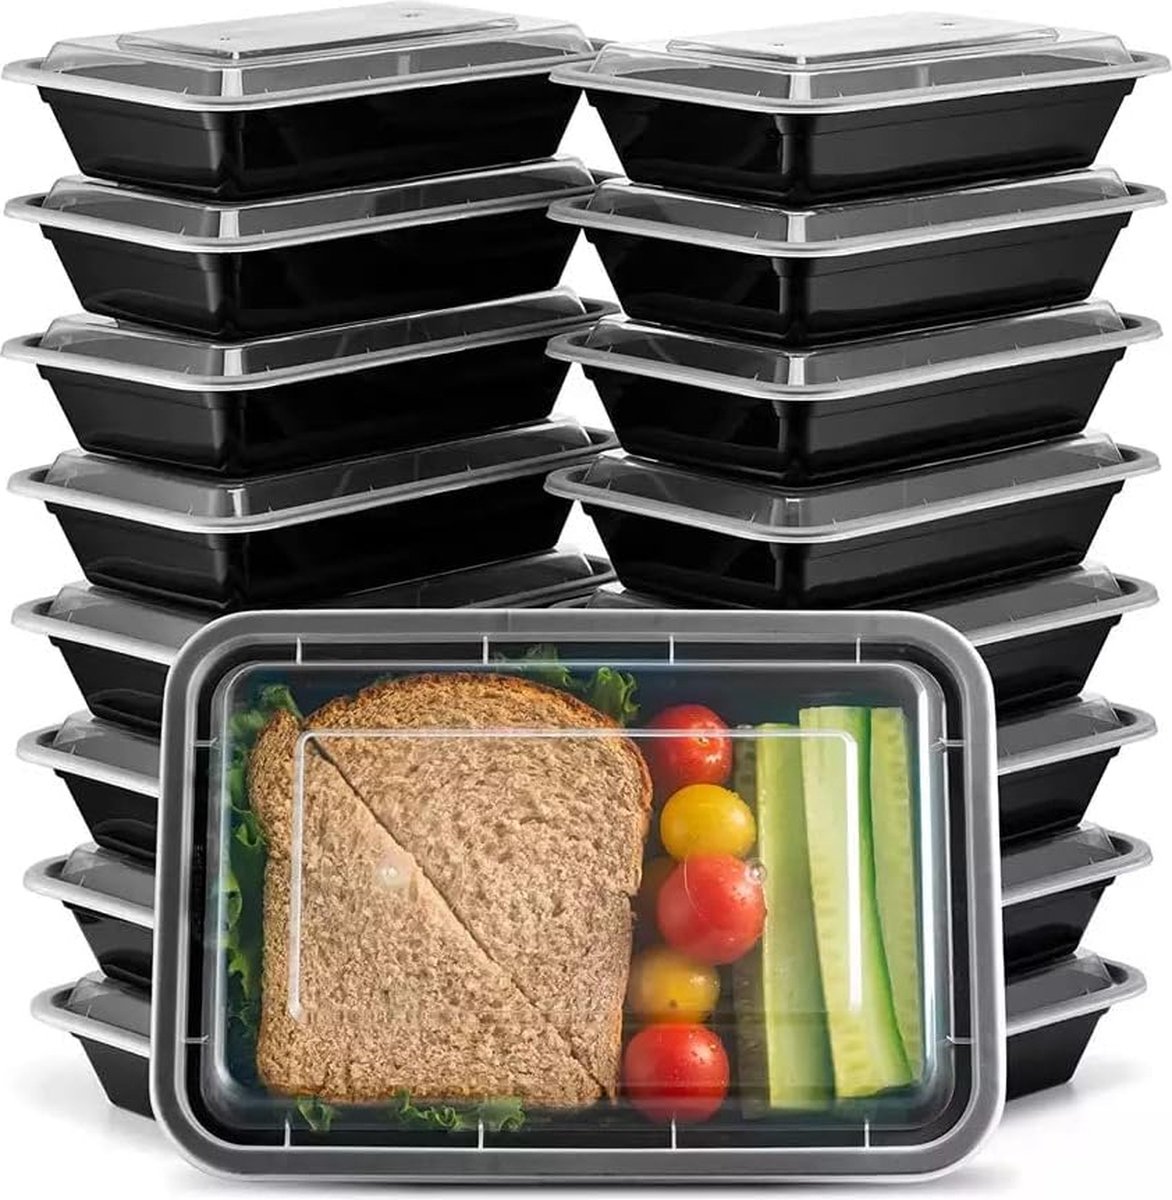 FUZON | Plastic maaltijdbereidingscontainers met 1 compartiment - Herbruikbare BPA-vrije voedselcontainers met luchtdichte deksels - Magnetronbestendig, vriezer en vaatwasserbestendig. (10 Stuks per verpakking, 946ML).